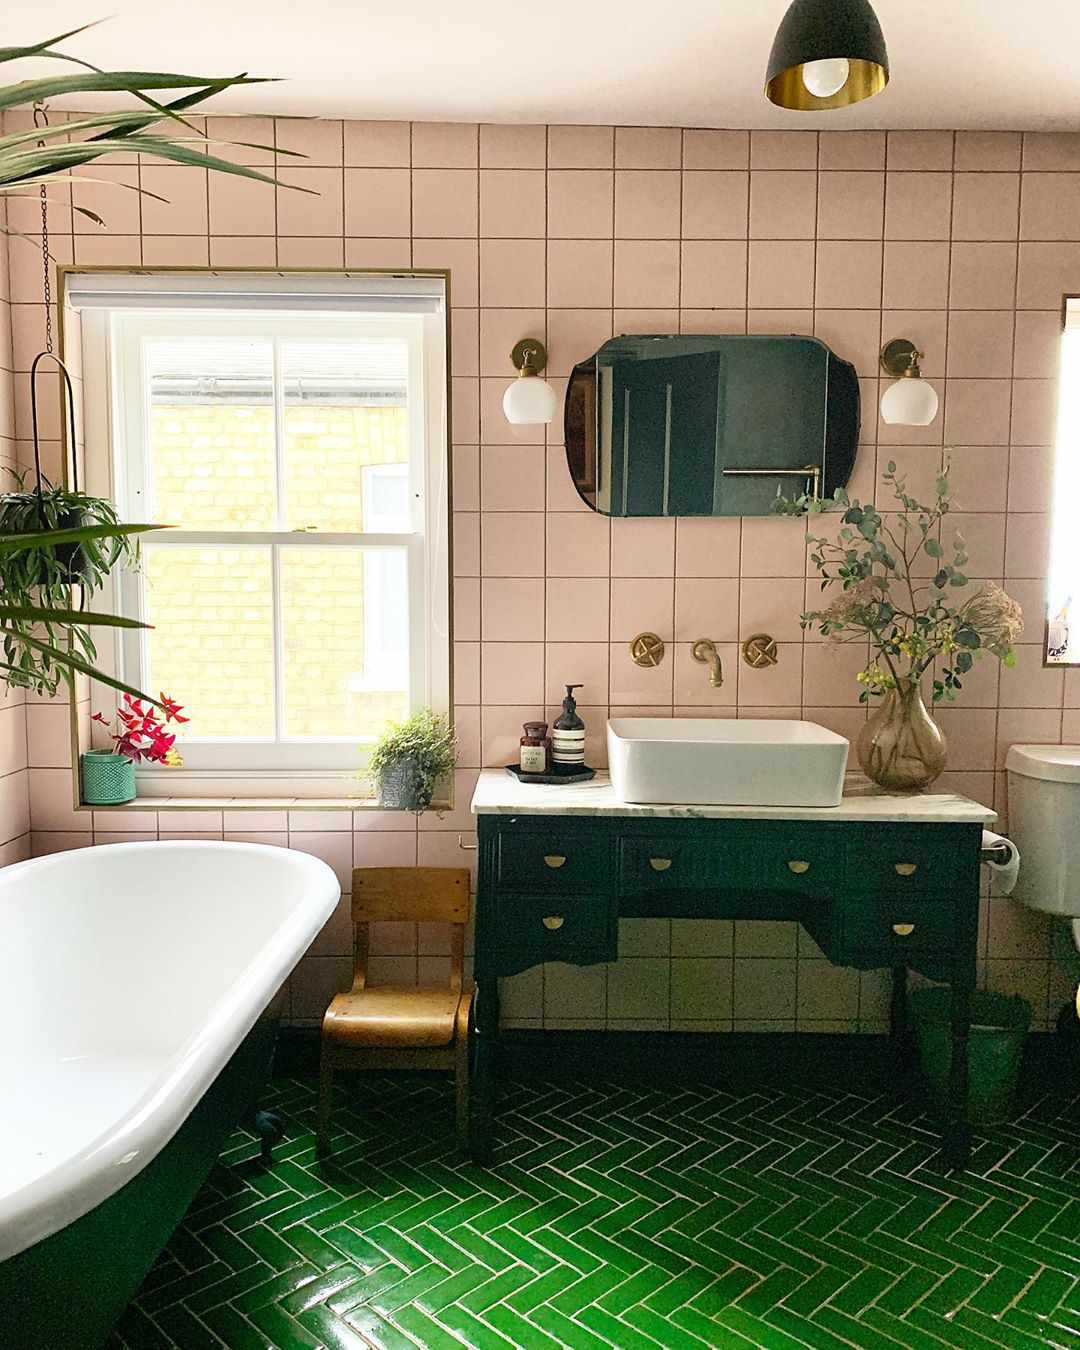 Banheiro com azulejos verdes e penteadeira